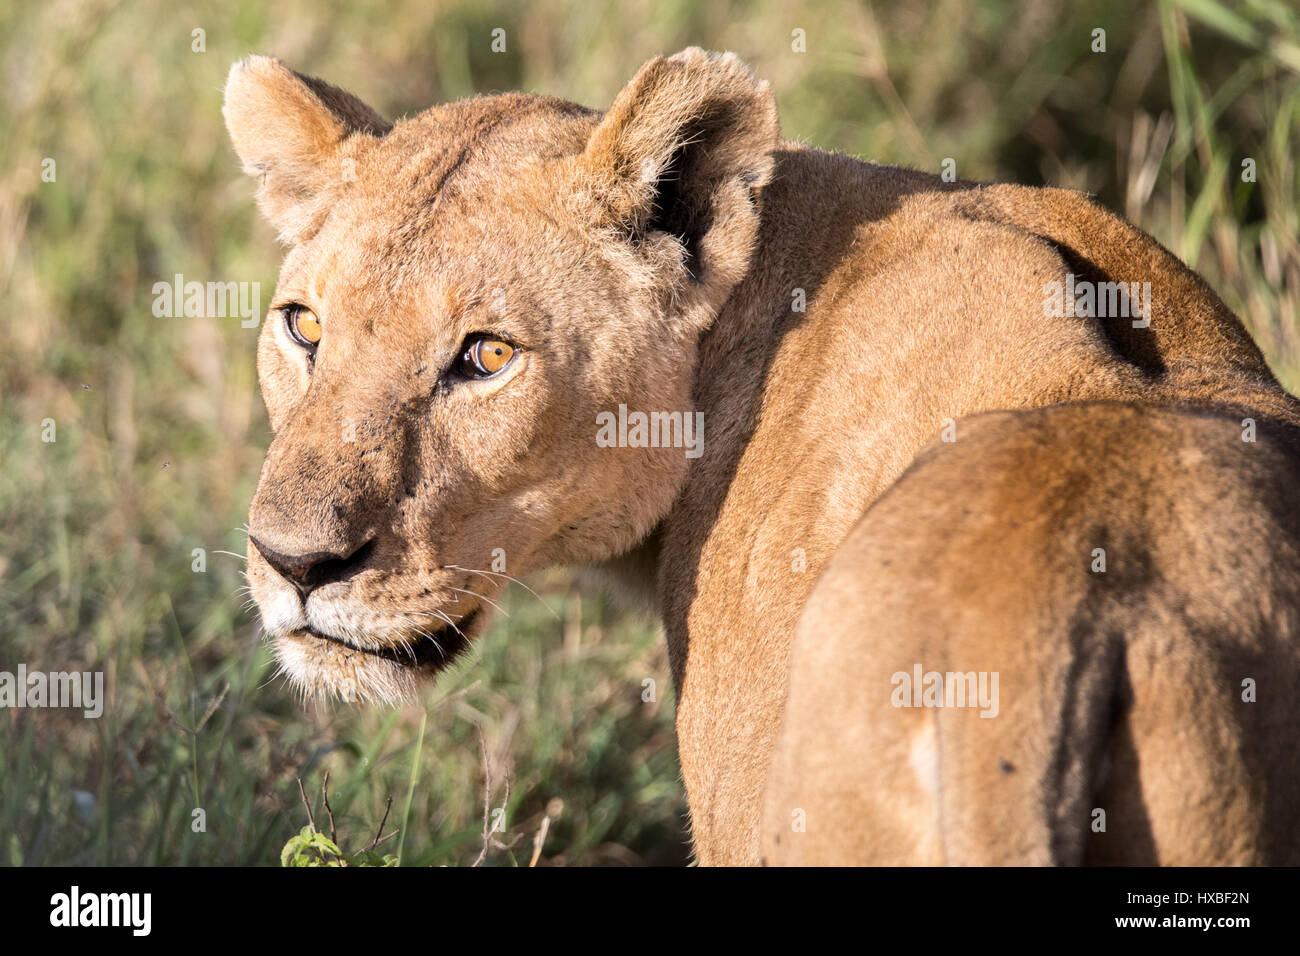 Eine Löwin dreht sich um, um die Kamera zu betrachten Stockfoto